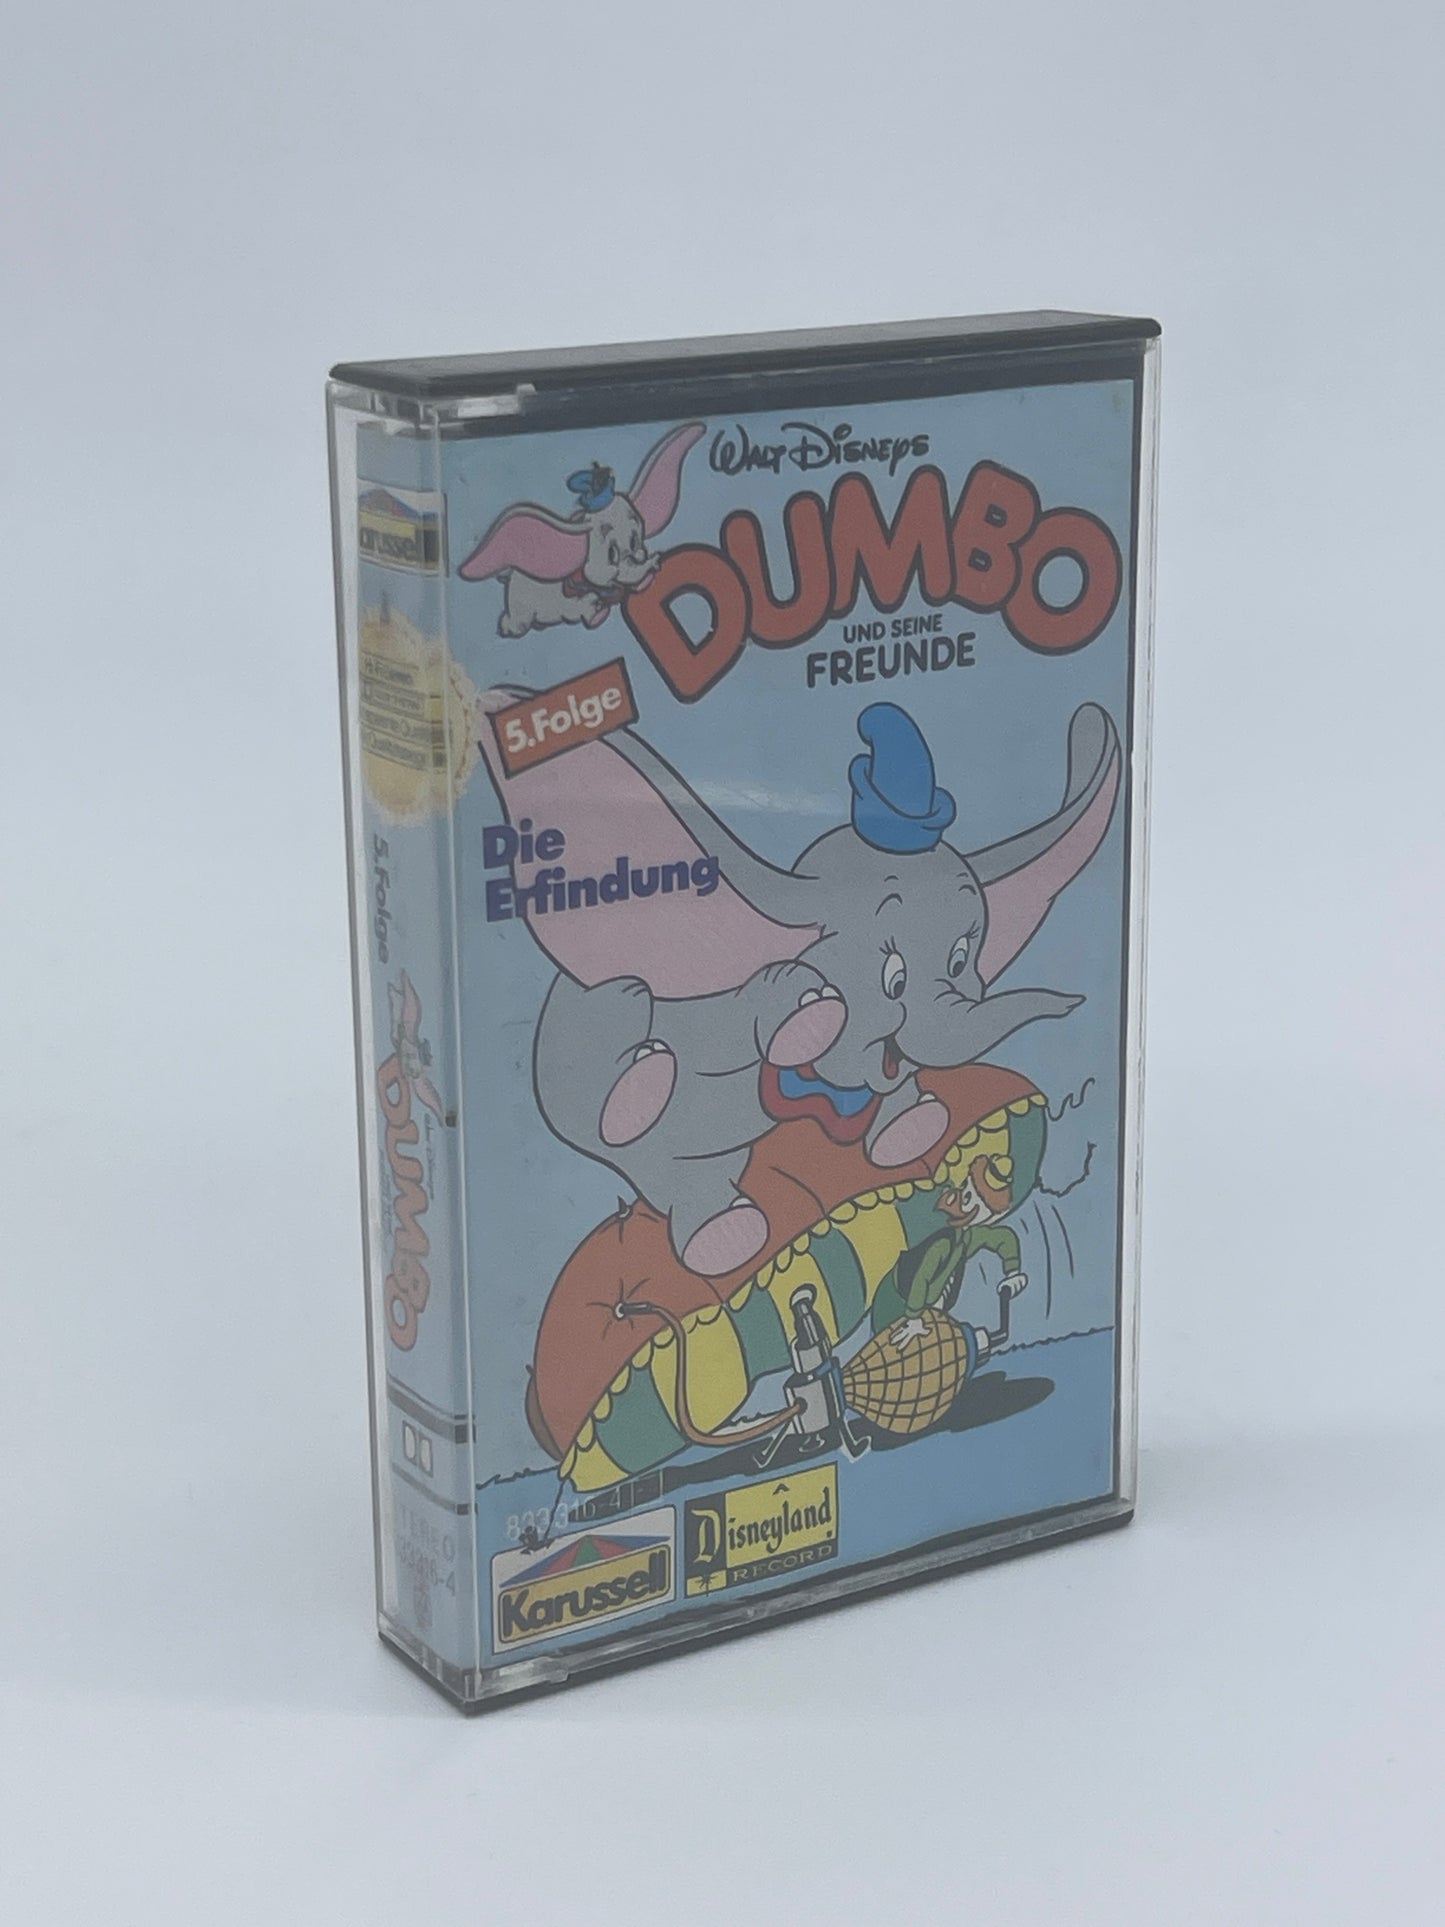 Walt Disney Dumbo & seine Freunde "Die Erfindung" Hörspielkassette Folge 5 (1987)